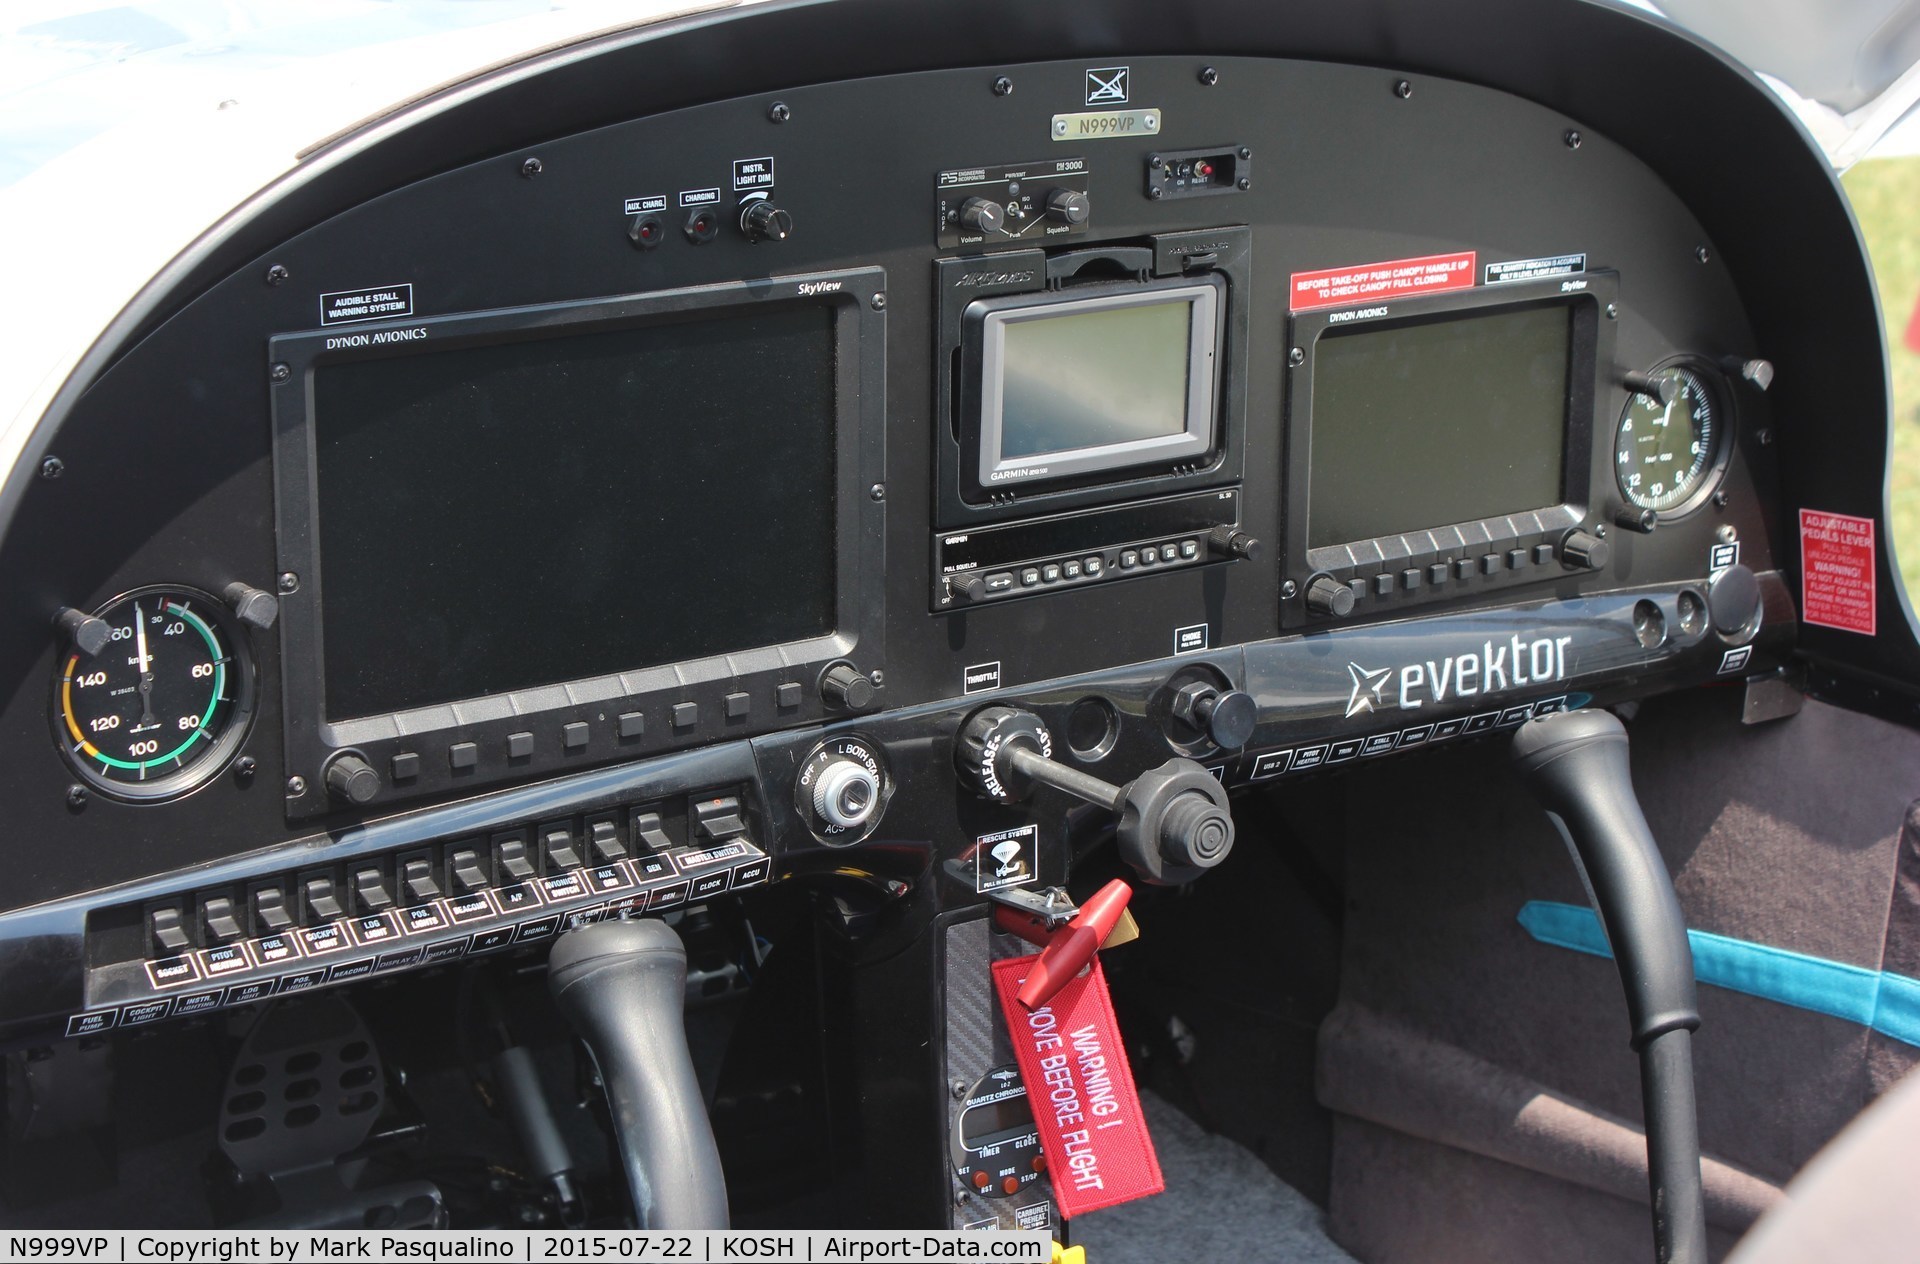 N999VP, 2014 Evektor-Aerotechnik Harmony LSA C/N 20141717, Harmony LSA